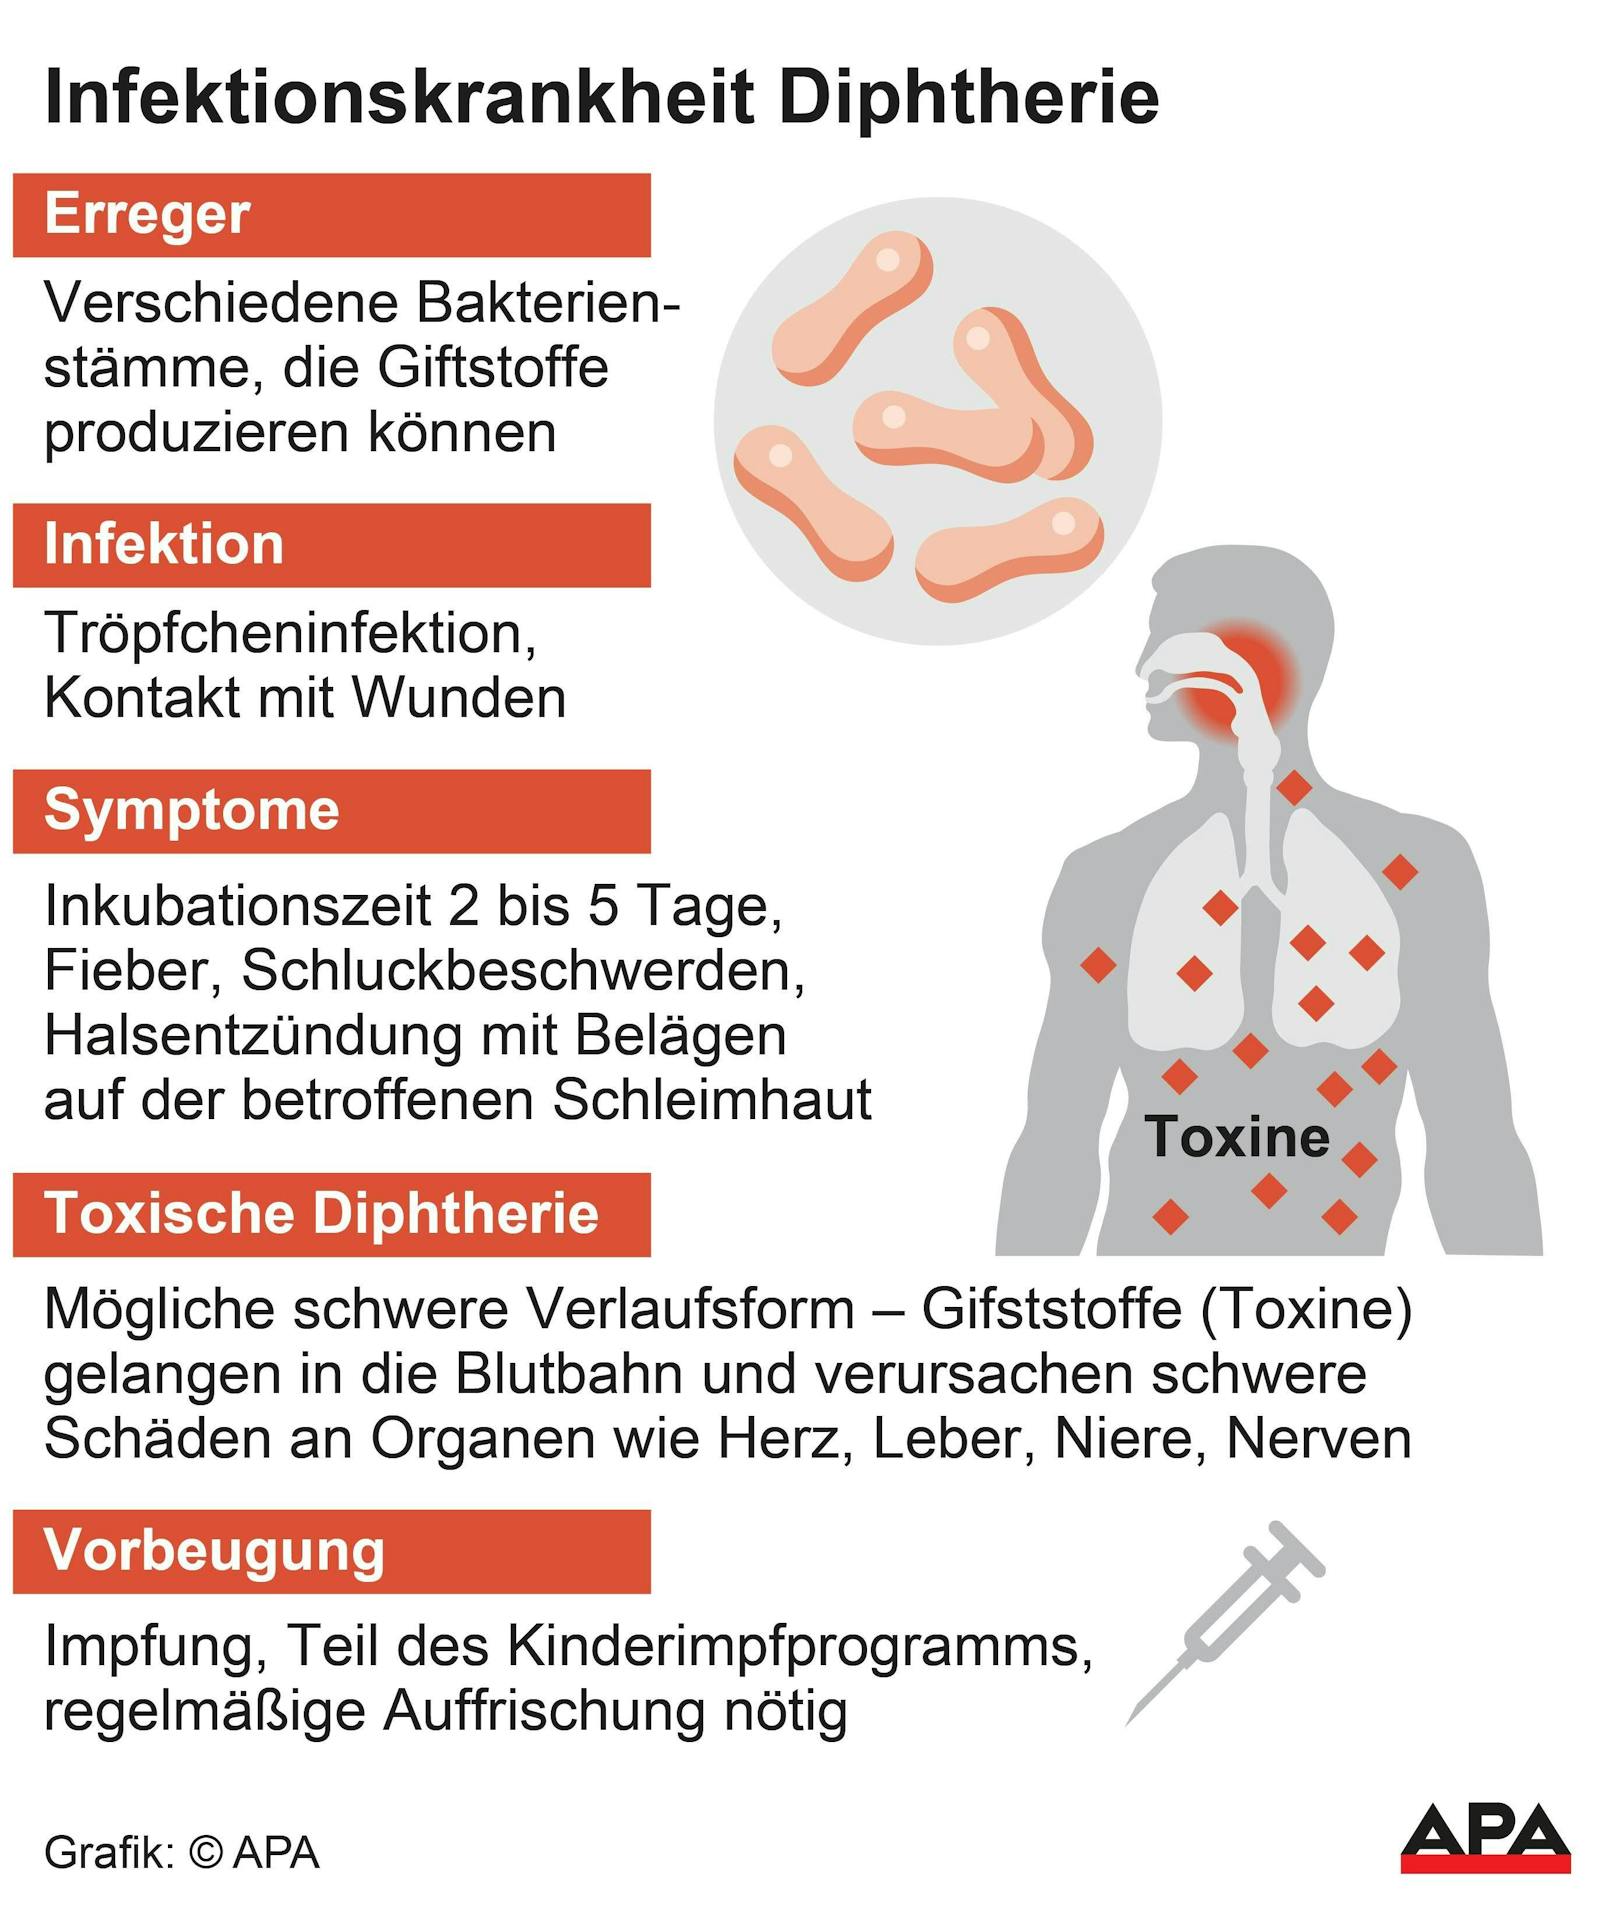 Derzeit sind 17 Diphtherie-Fälle in Österreich bekannt.